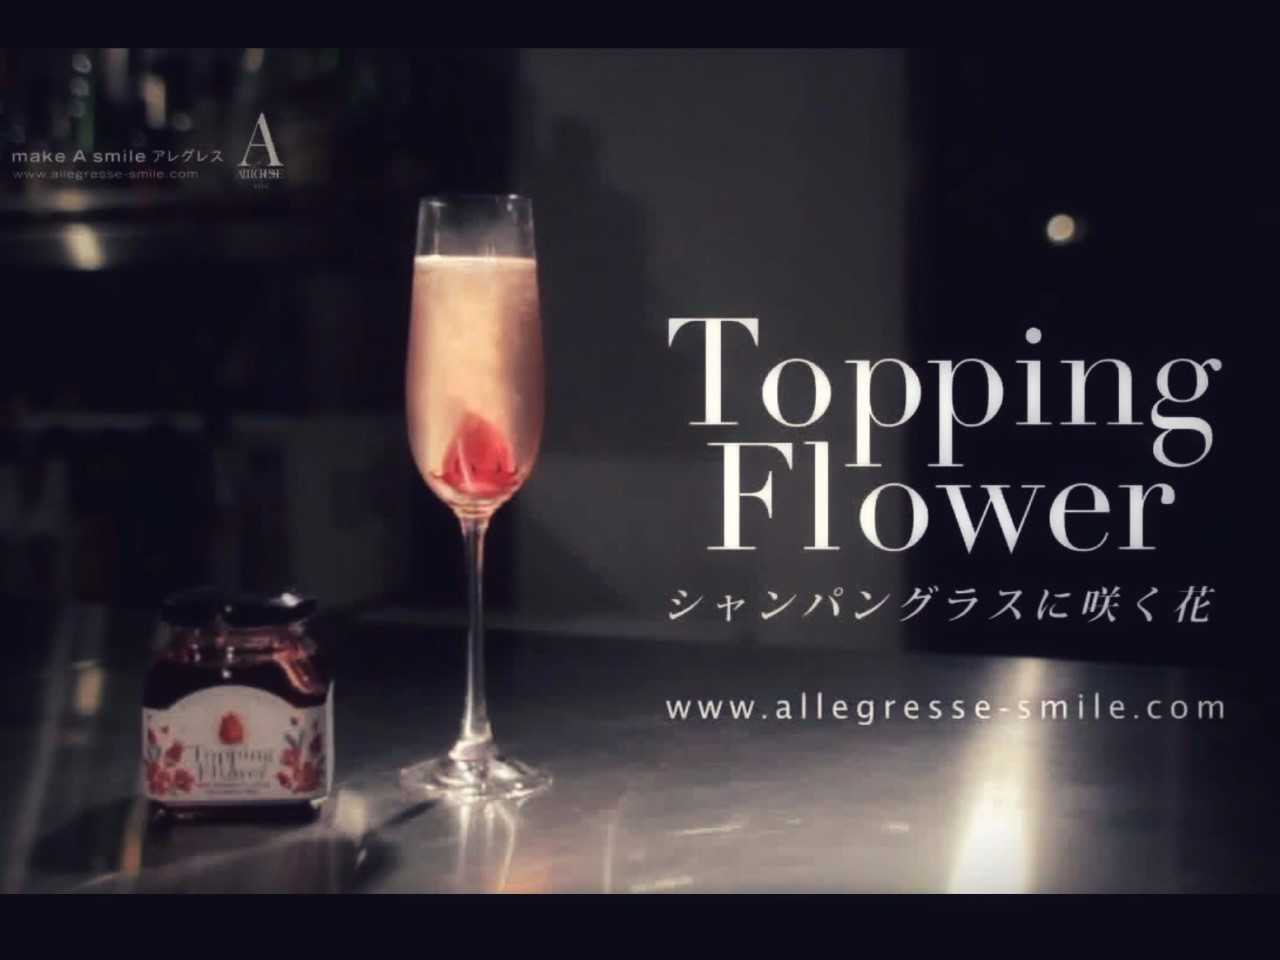 シャンパングラスに咲く花 Topping Flower 雑貨通販 ヴィレッジヴァンガード公式通販サイト